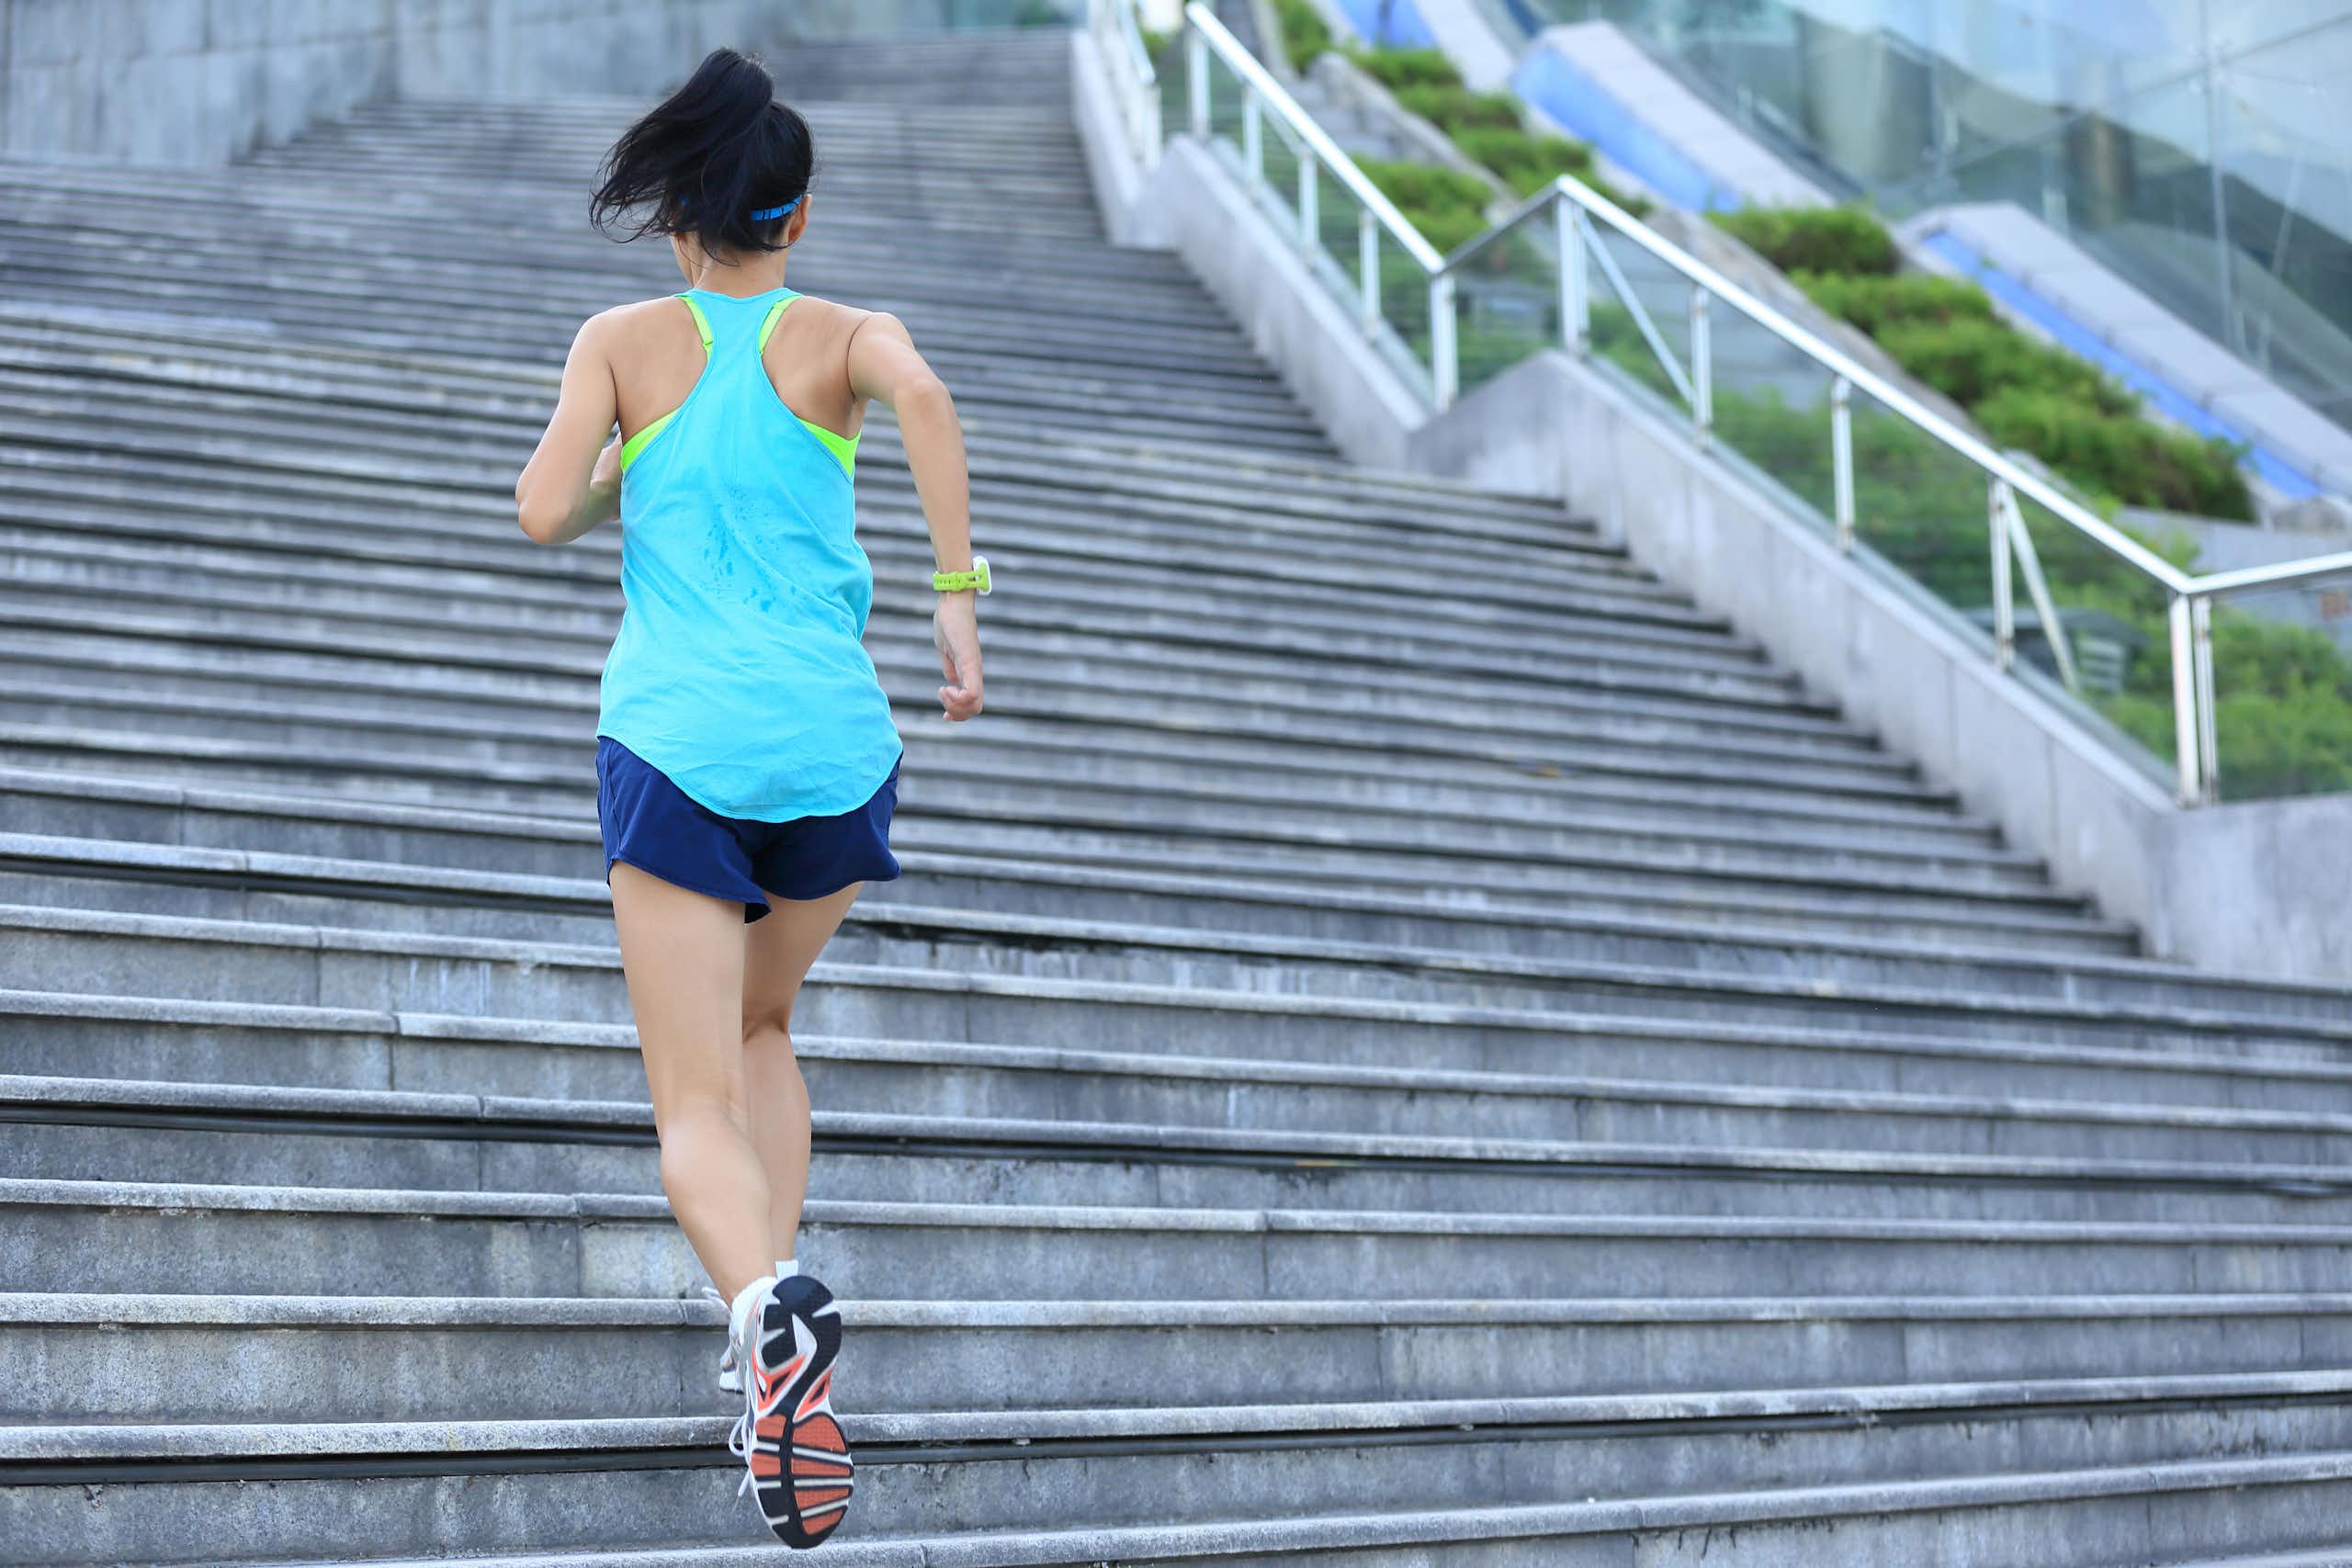 Une jeune femme de dos en tenue de sport monte des escaliers dans un environnement extérieur.